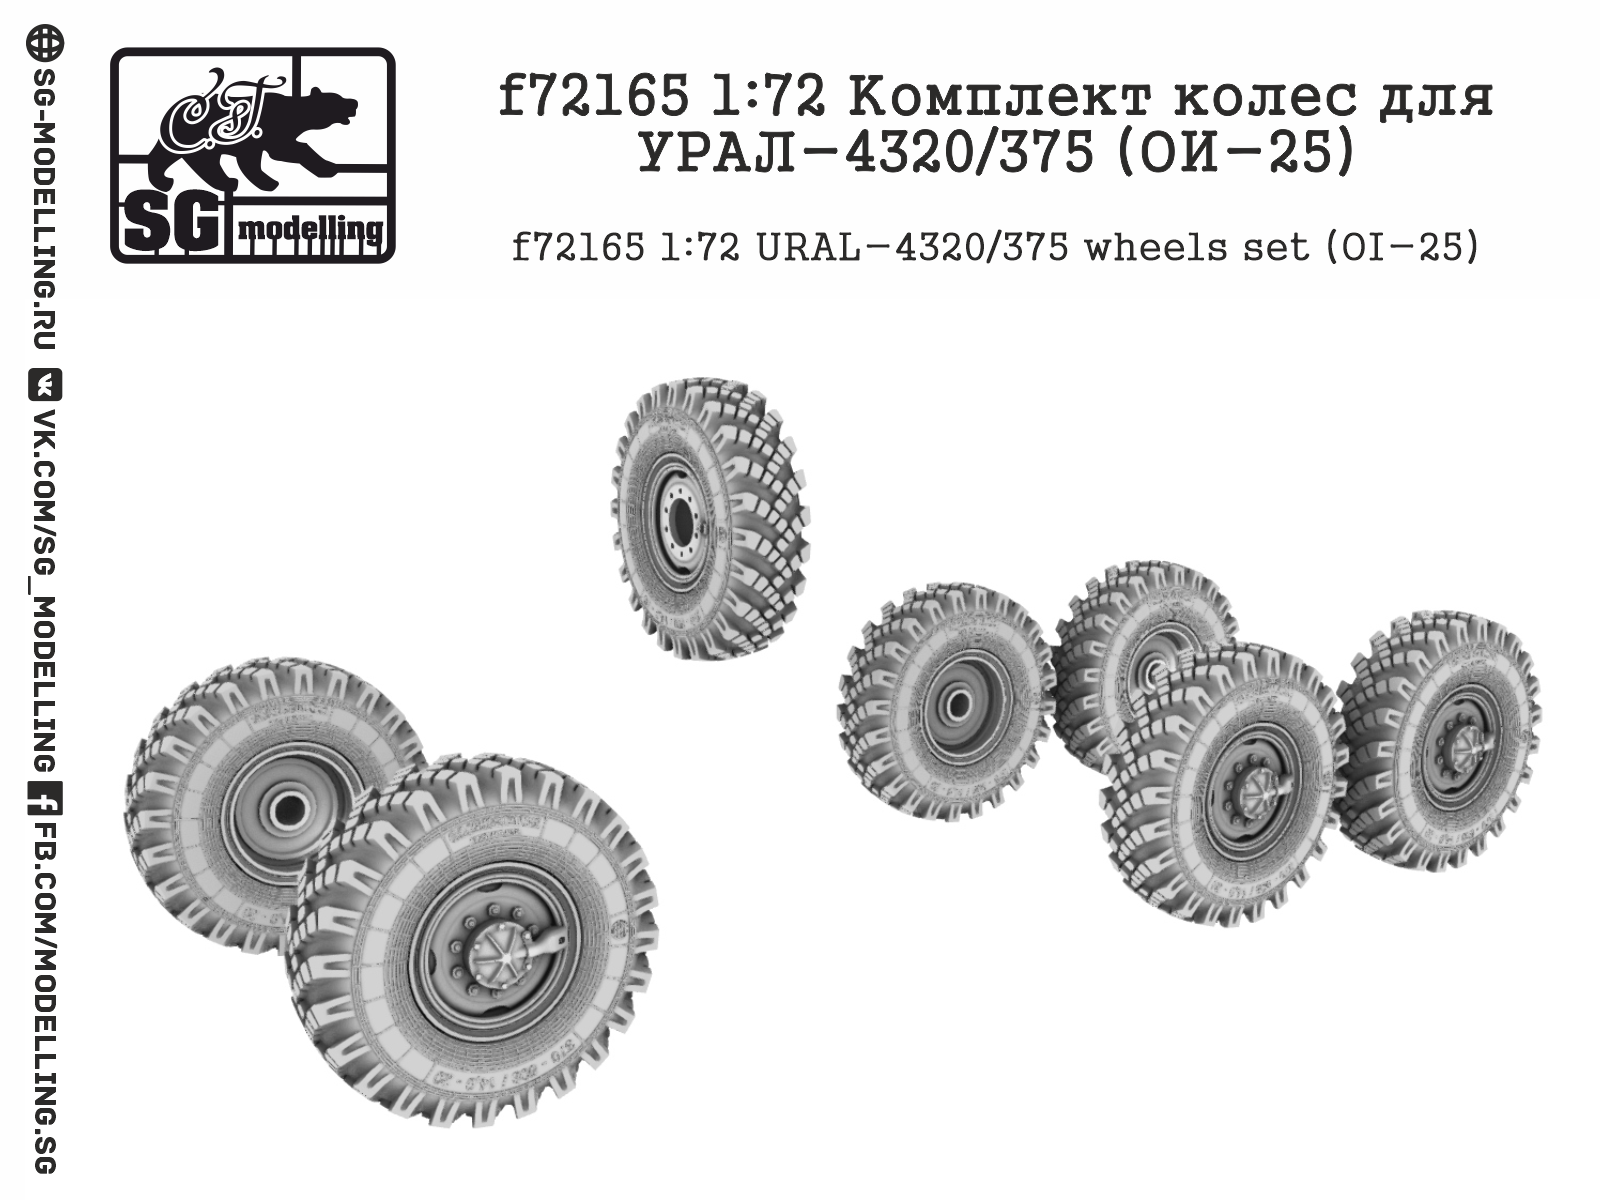 f72165  дополнения из смолы  Комплект колес для УР@Л-4320/375 (ОИ-25)  (1:72)